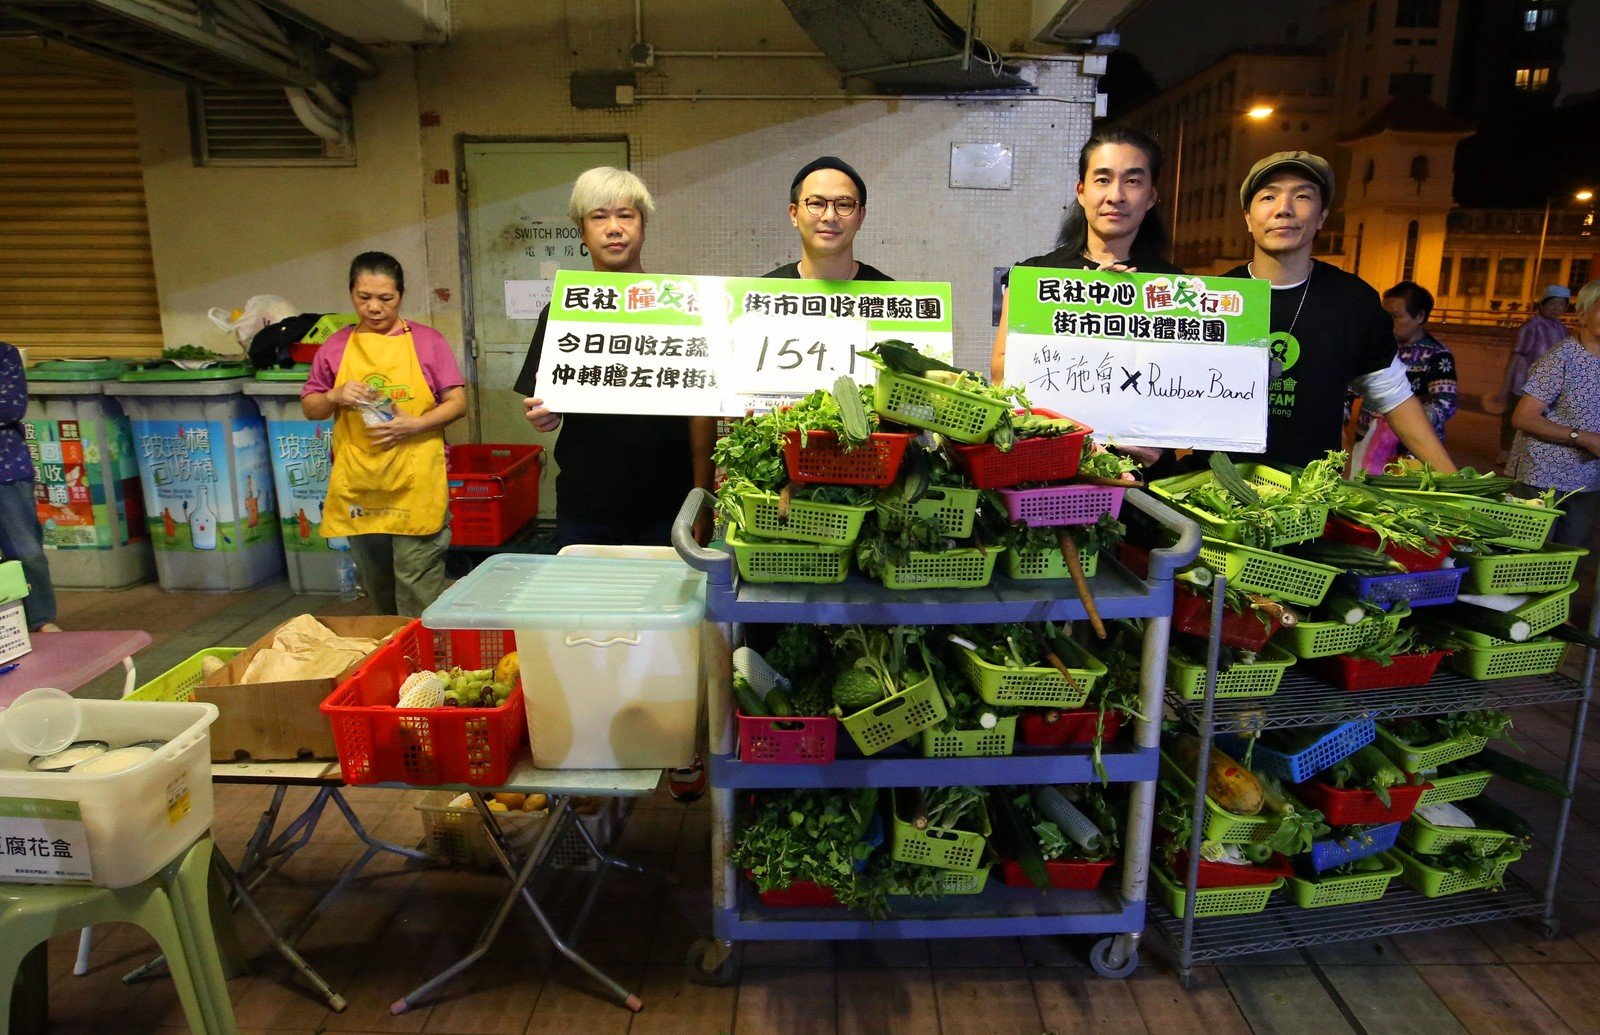 (左至右) 樂隊RubberBand 成員泥鯭、6號、阿正、阿偉，早前支持樂施會的倡議及公眾教育活動「公平咩」，體驗剩菜回收，認識香港社會的豐盛和匱乏。